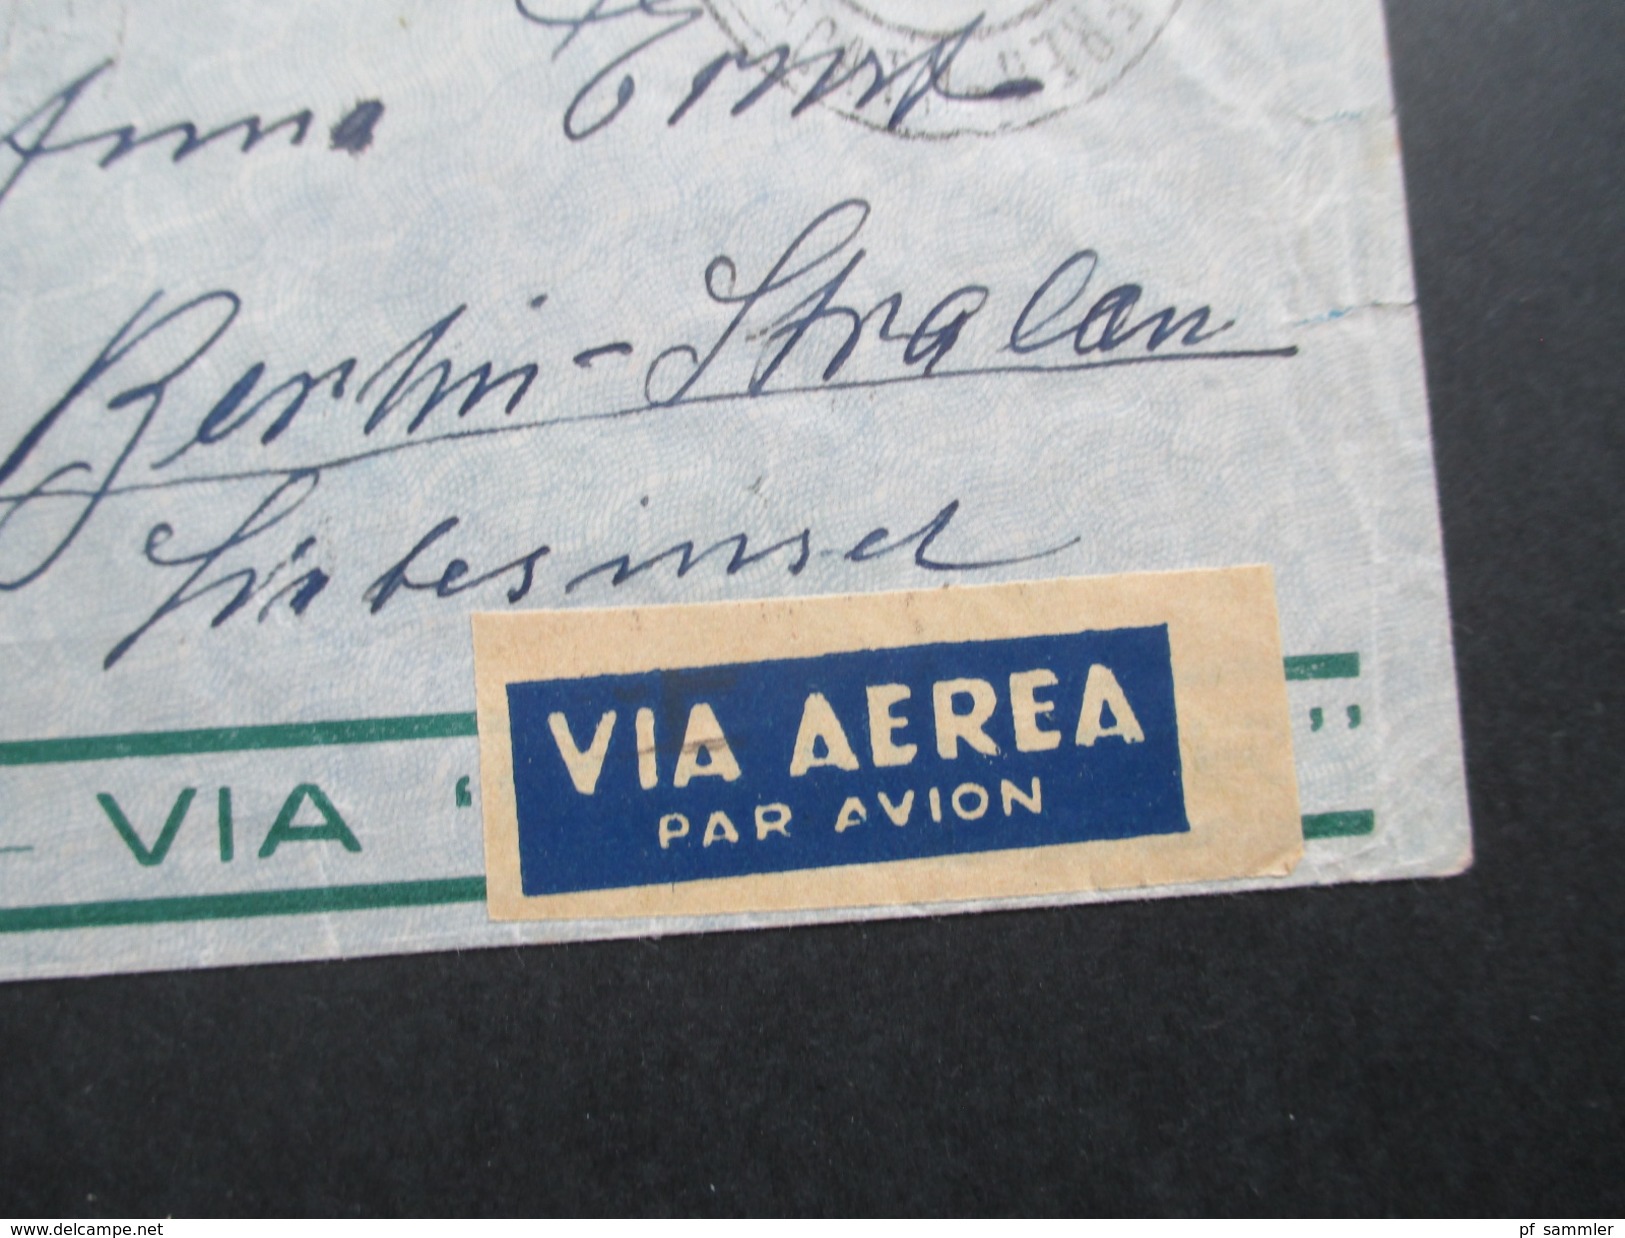 Brasilien 1935 Luftpost / Flugpost Via Condor. Nach Berlin über Paris R.P. Avion. Zeppelinpost?? - Briefe U. Dokumente